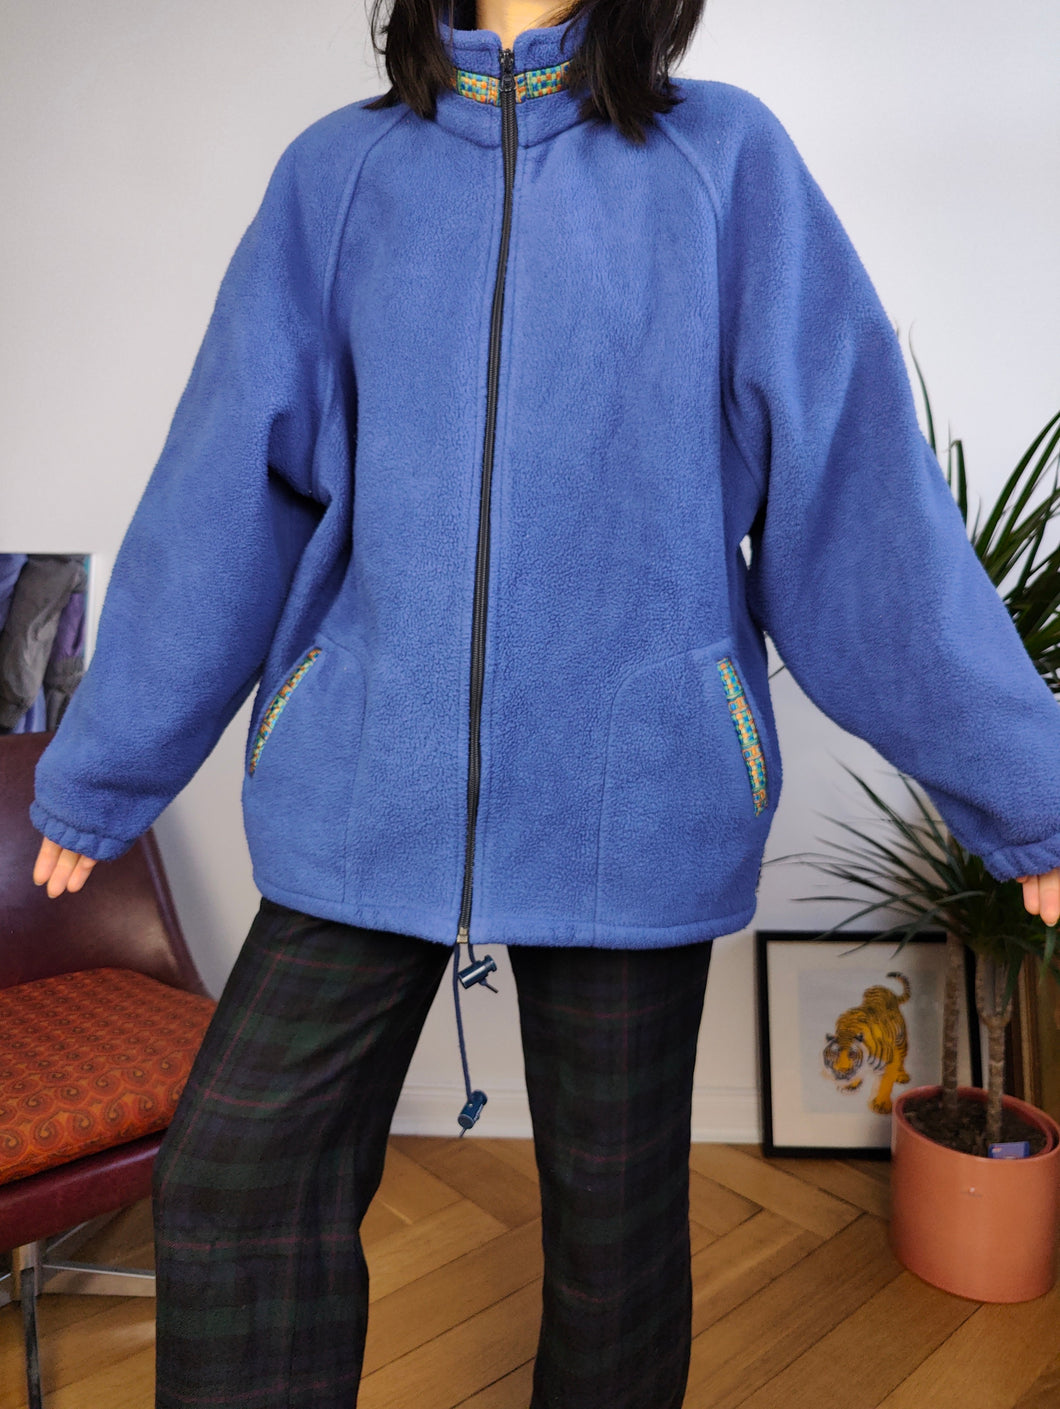 Vintage fleece jacket pullover jumper cardigan plain blue thick Alpes made in France L